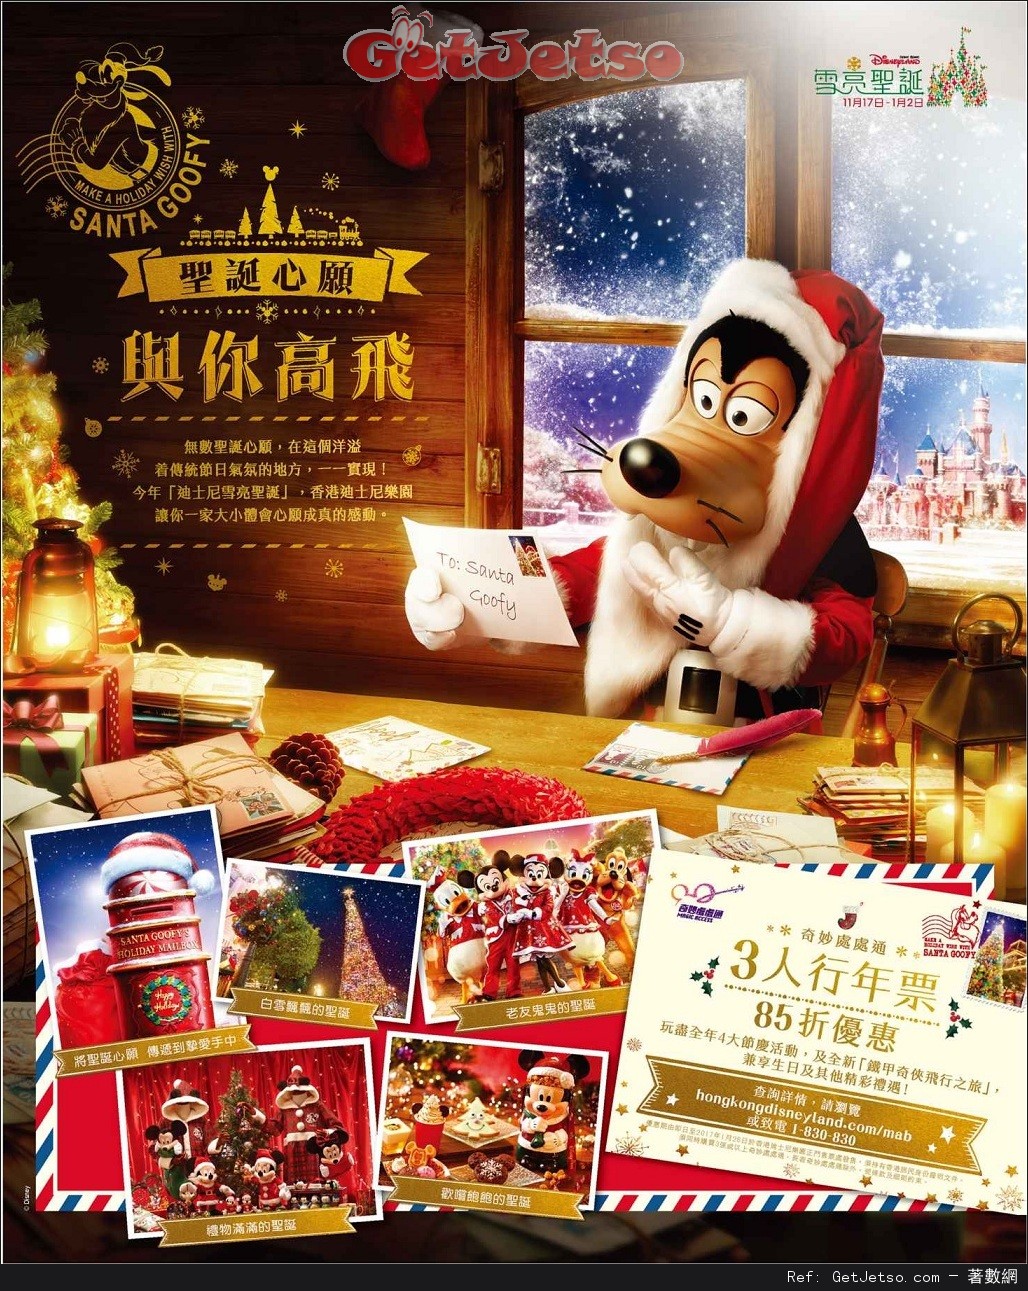 香港迪士尼樂園「奇妙處處通」3人同行85折優惠(至17年1月28日)圖片1